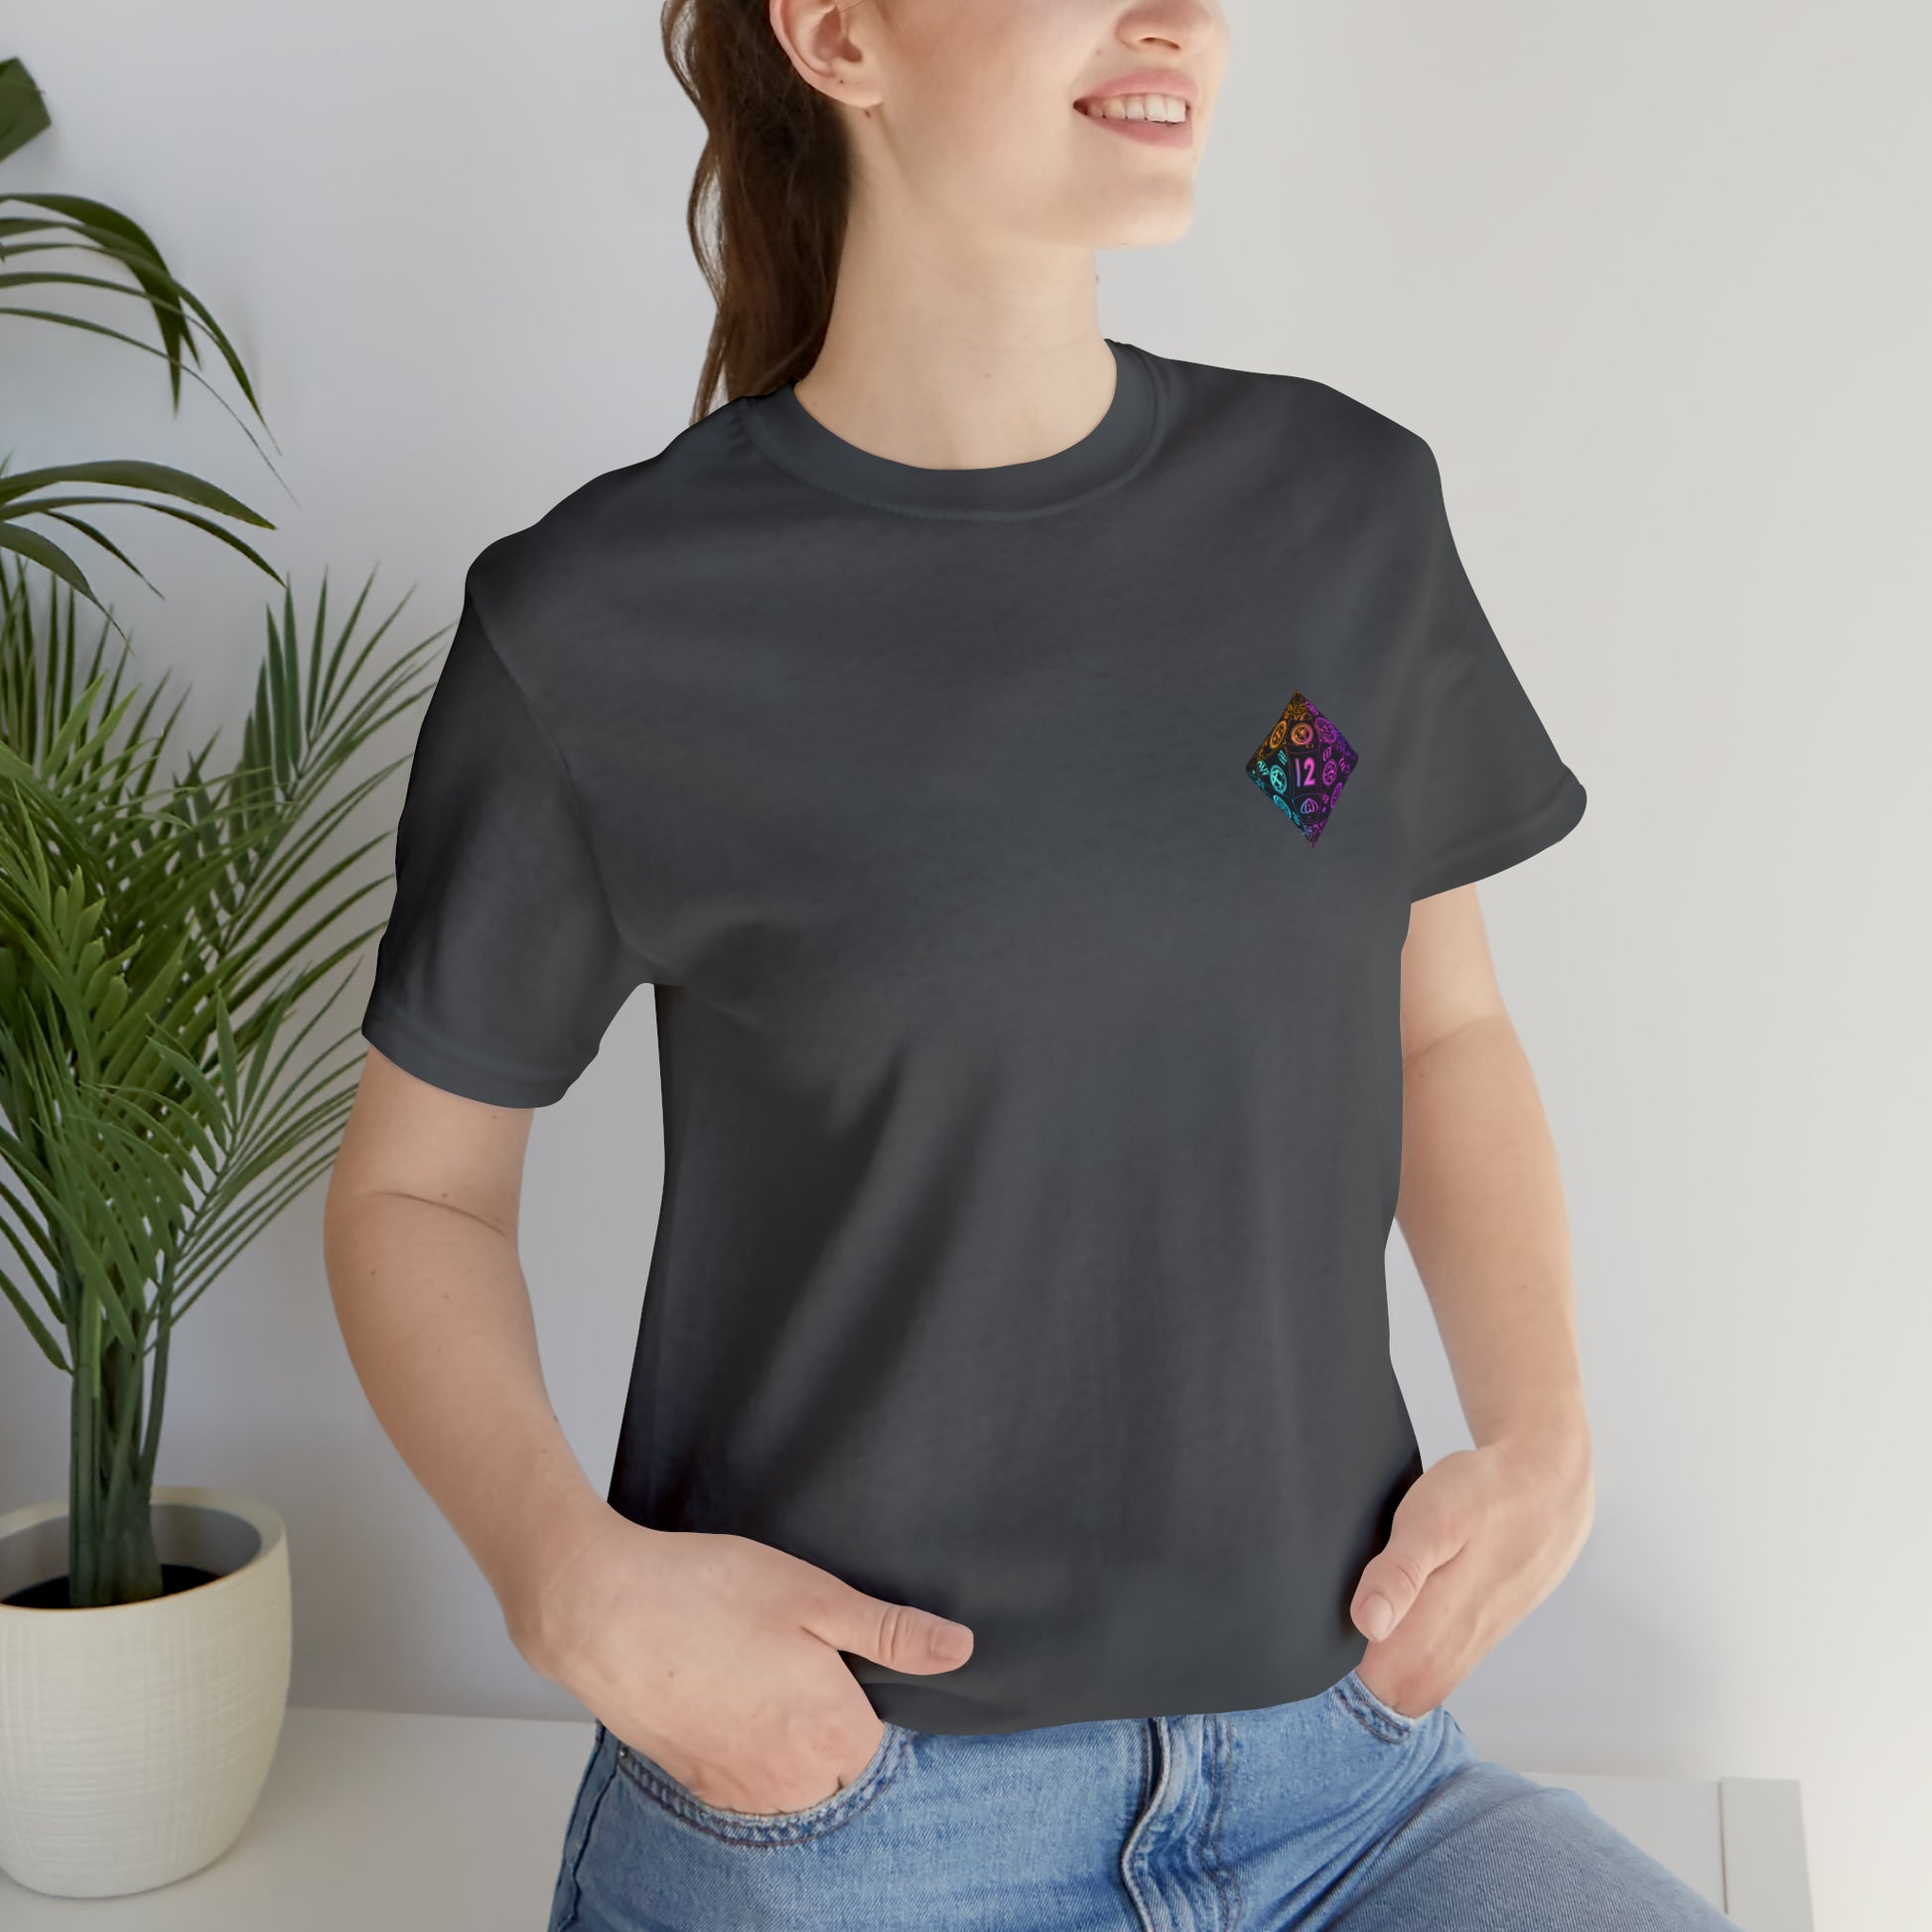 asphalt-quest-thread-tee-shirt-with-small-neon-diamond-dice-on-left-chest